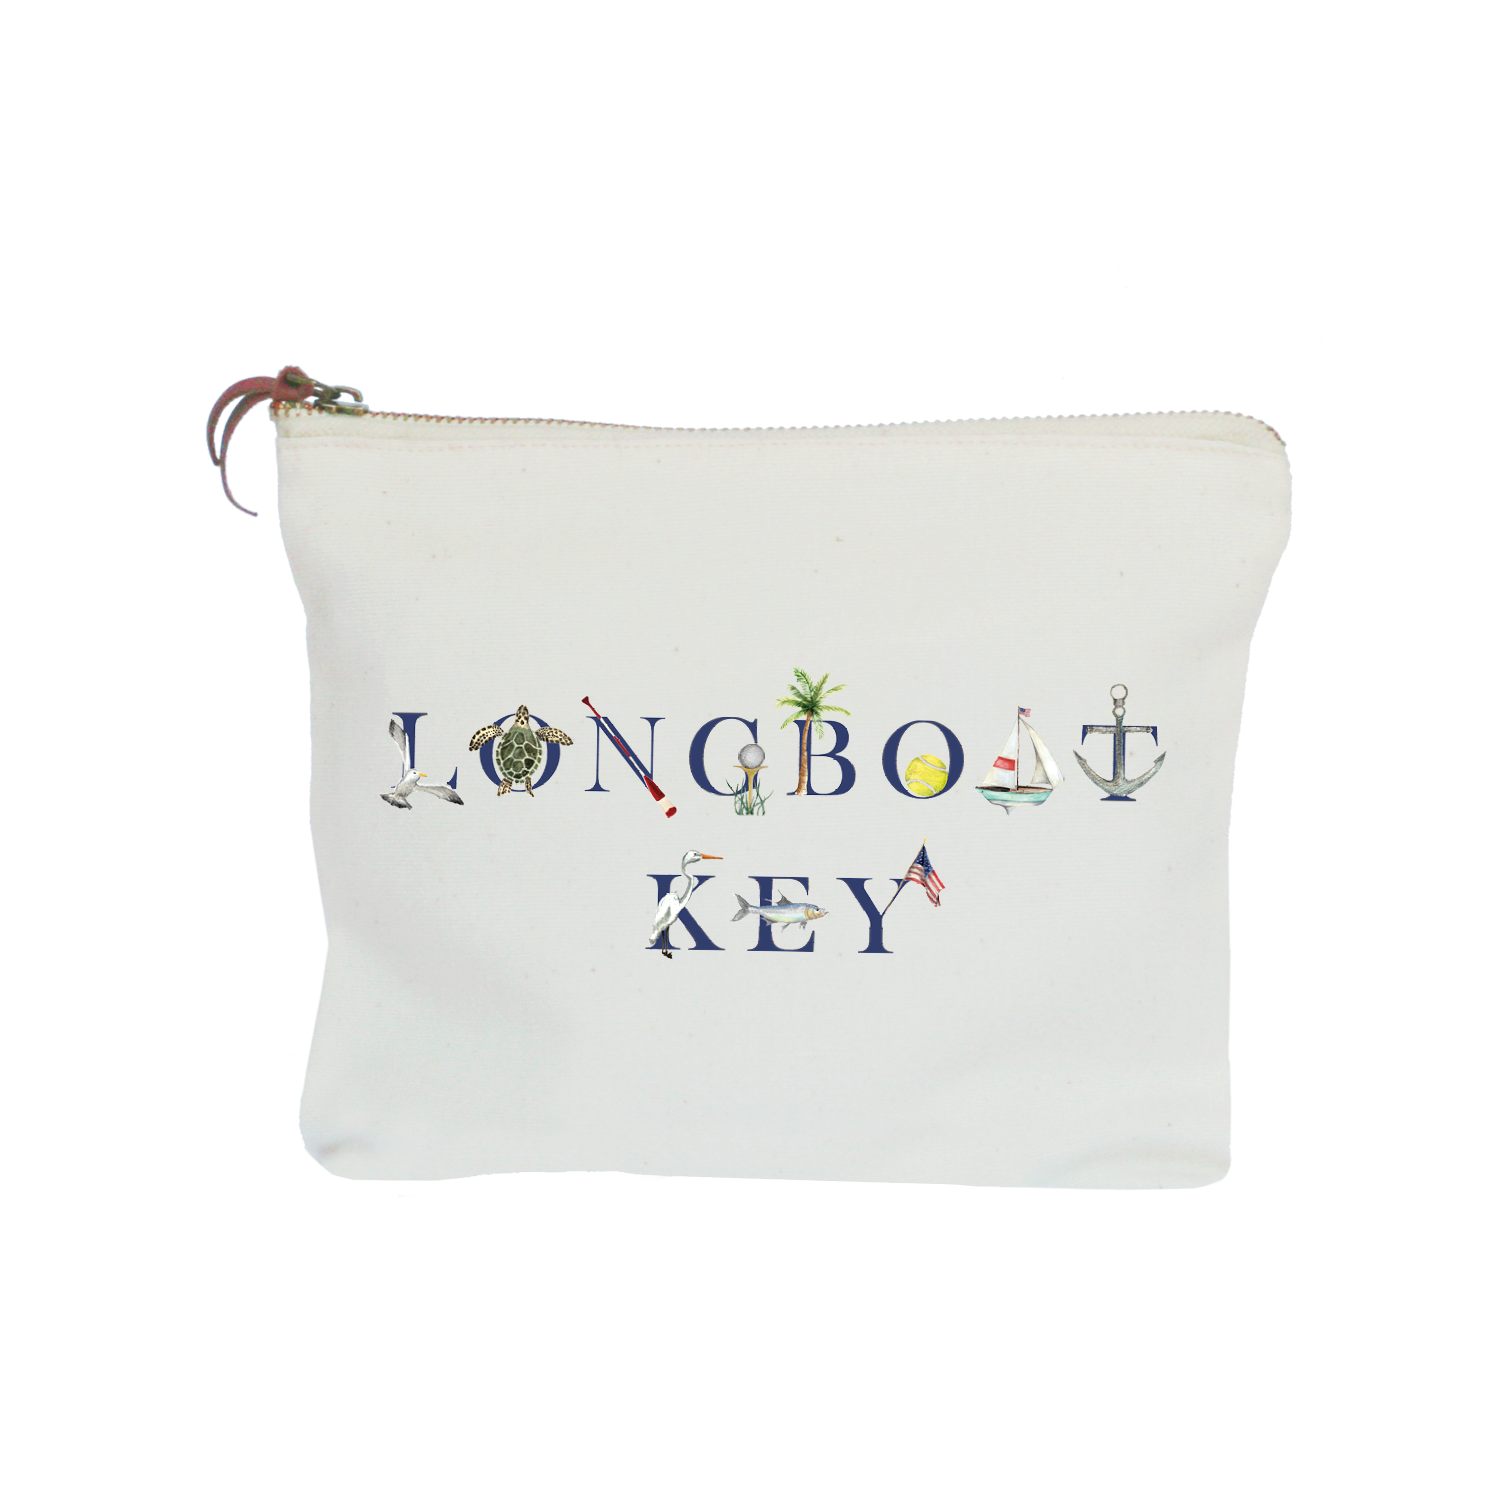 Longboat Key zipper pouch